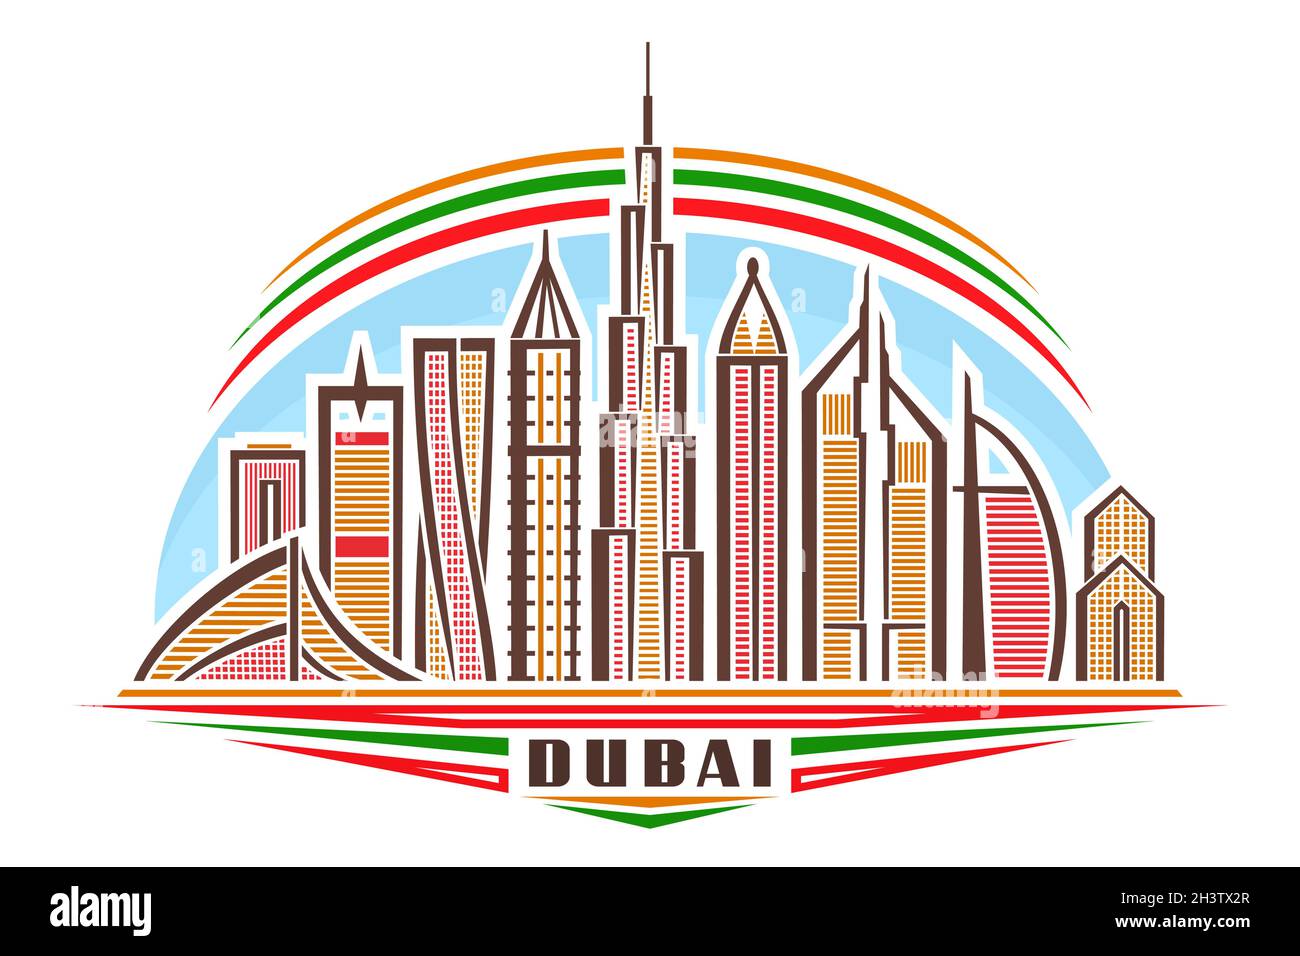 Vektor-Illustration von Dubai, horizontales Poster mit linearem Design berühmte dubai-Stadtlandschaft am Tag Himmel Hintergrund, asiatische Urban Line Art-Konzept mit de Stock Vektor